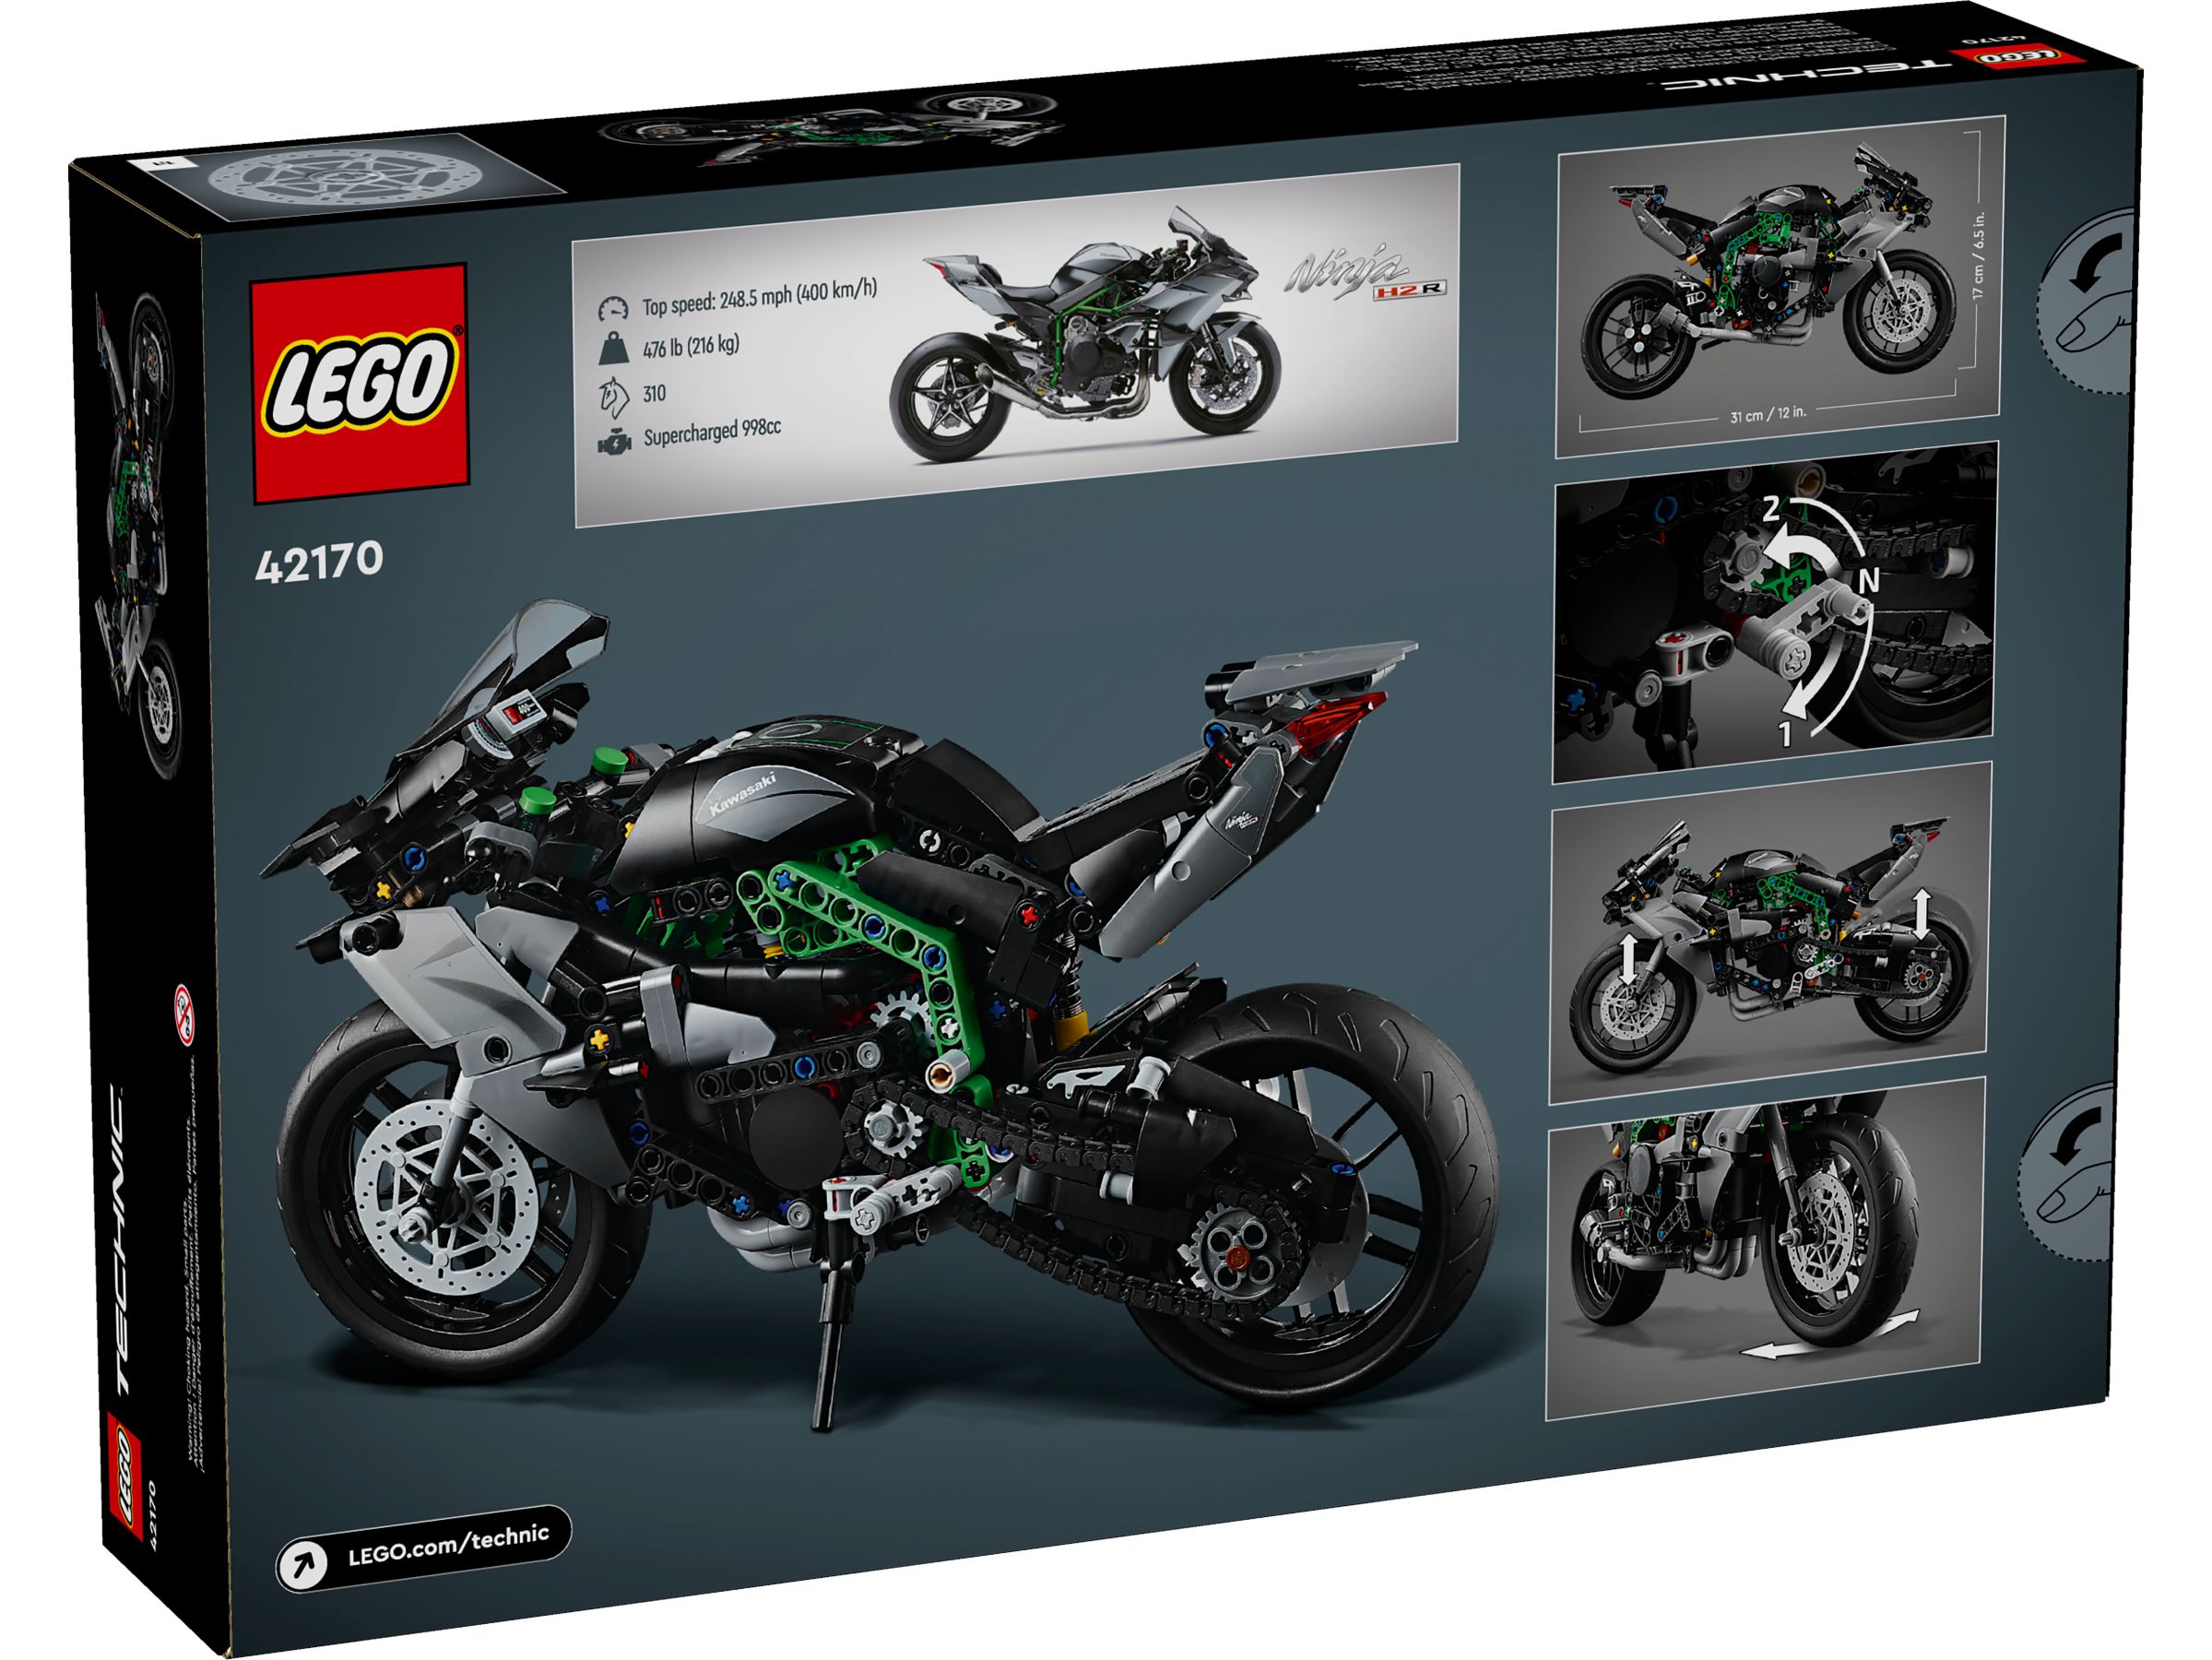 LEGO Technic 42170 Kawasaki Ninja H2R Motorrad LEGO_42170_alt2.jpg